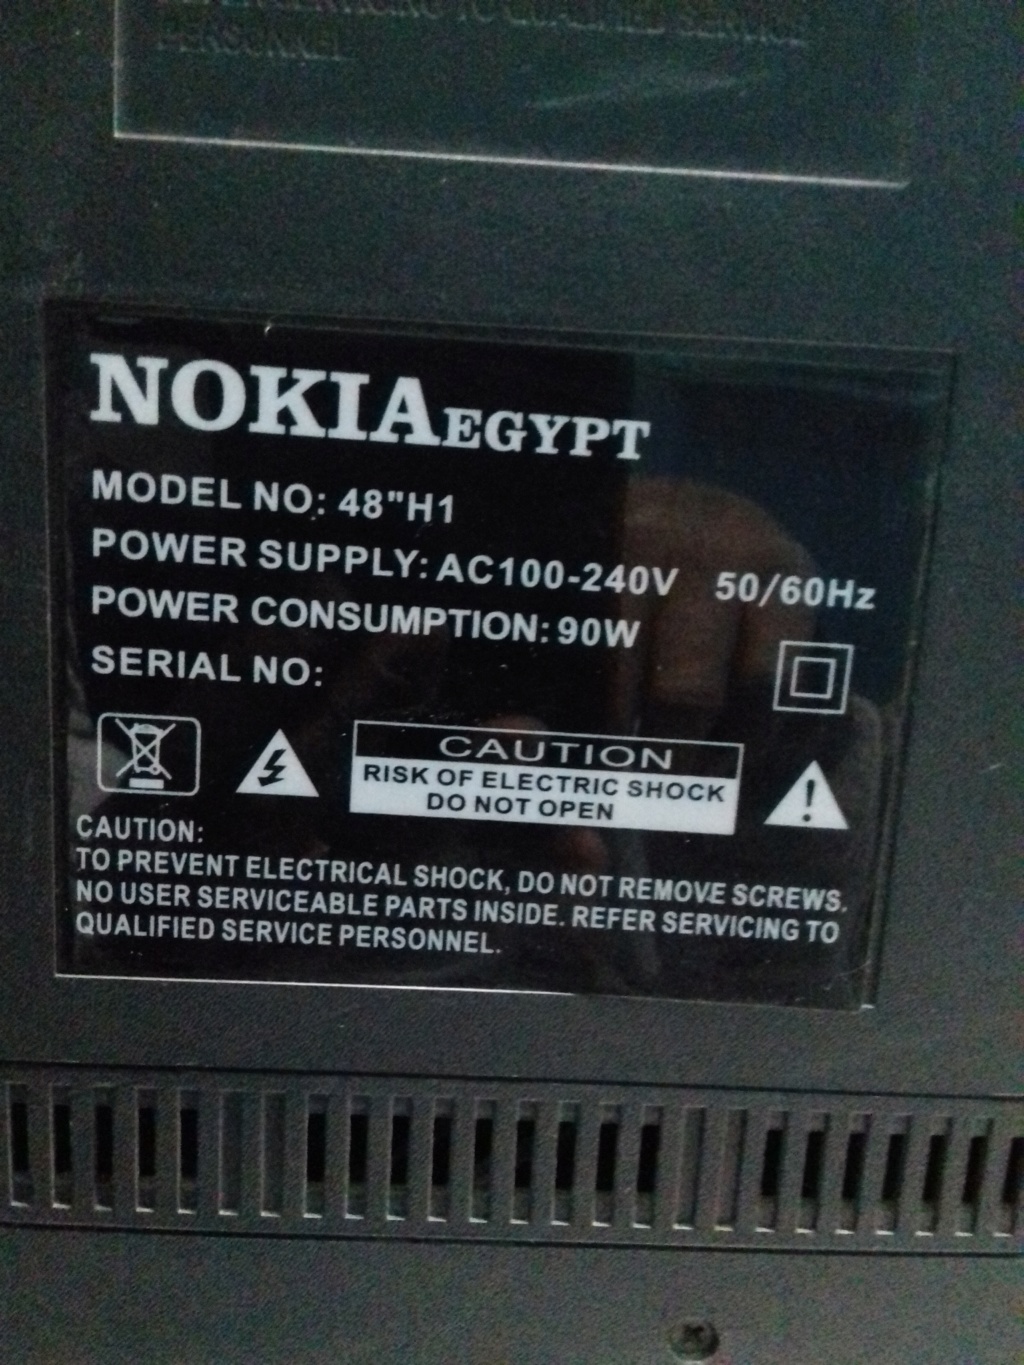  تحميل فلاشة شاشة نوكيا ايجيبت NOKIA EGYPT 48-H1 00310